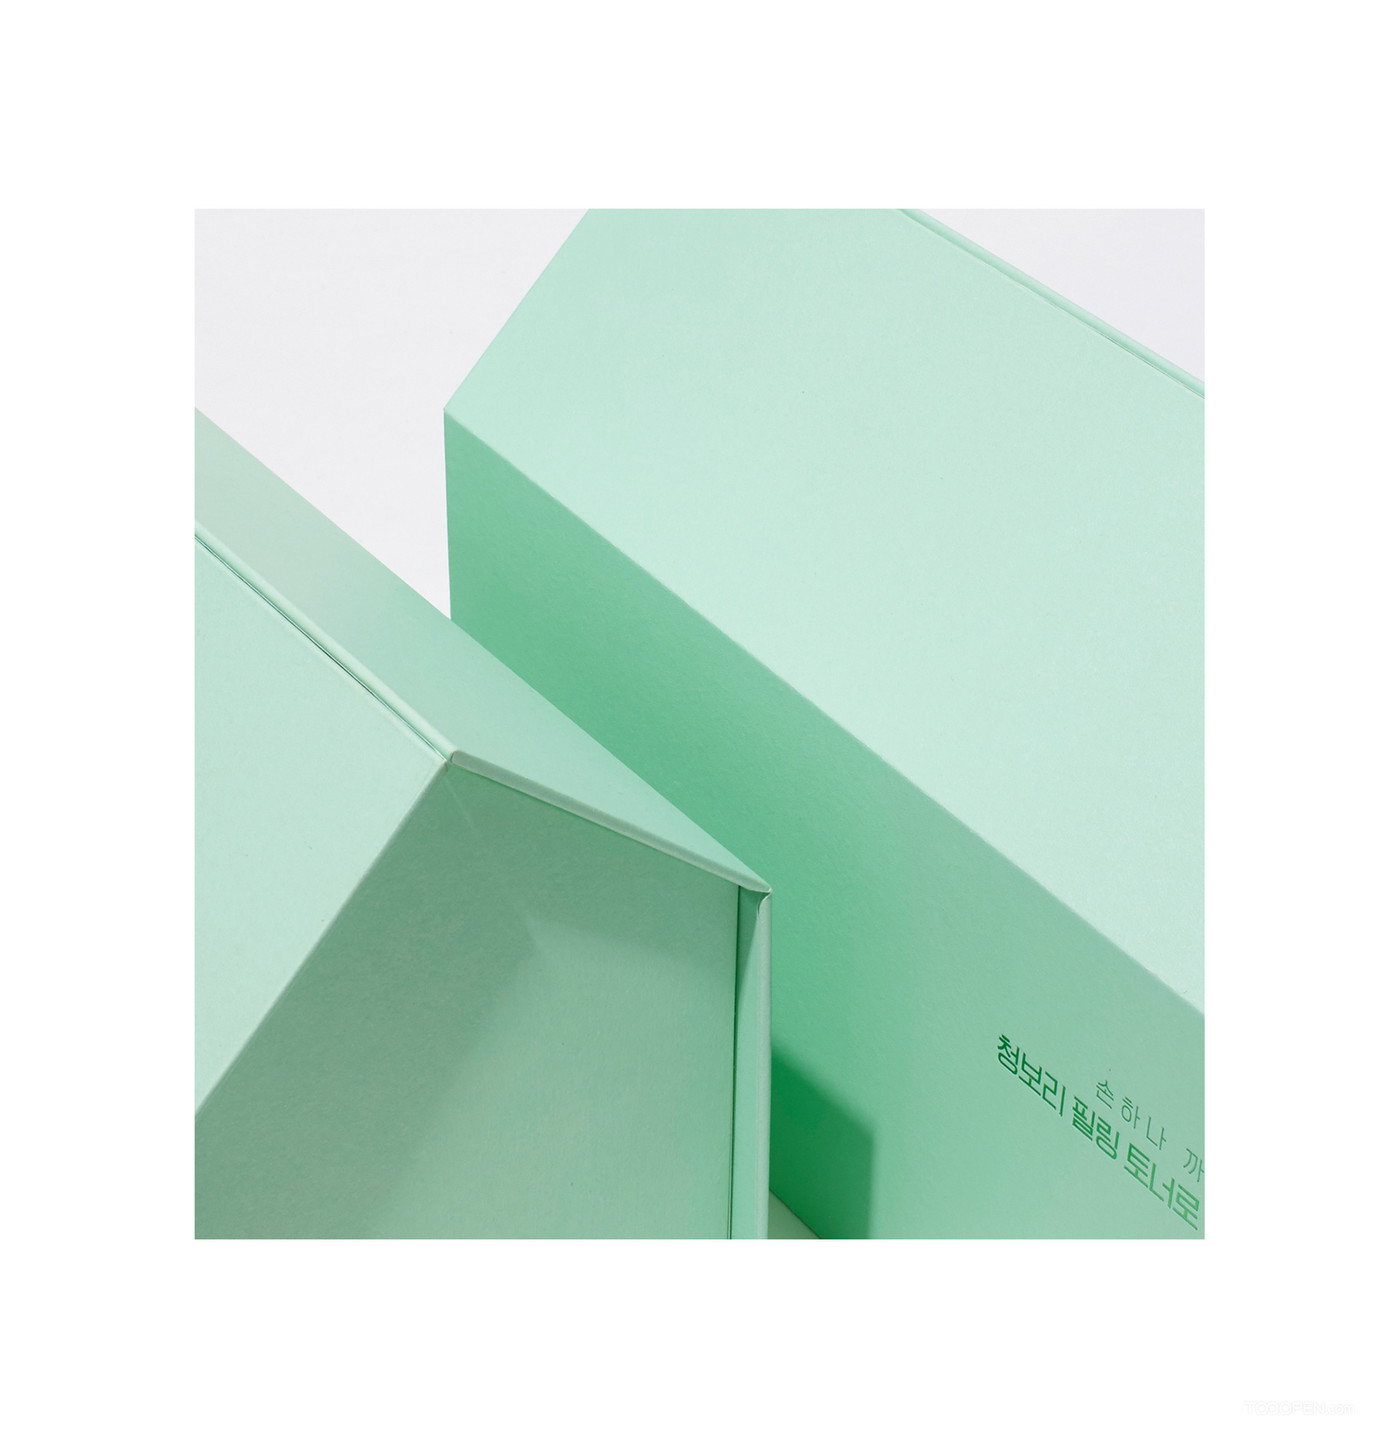 韩国悦诗风吟绿茶限量新包装设计作品欣赏-04